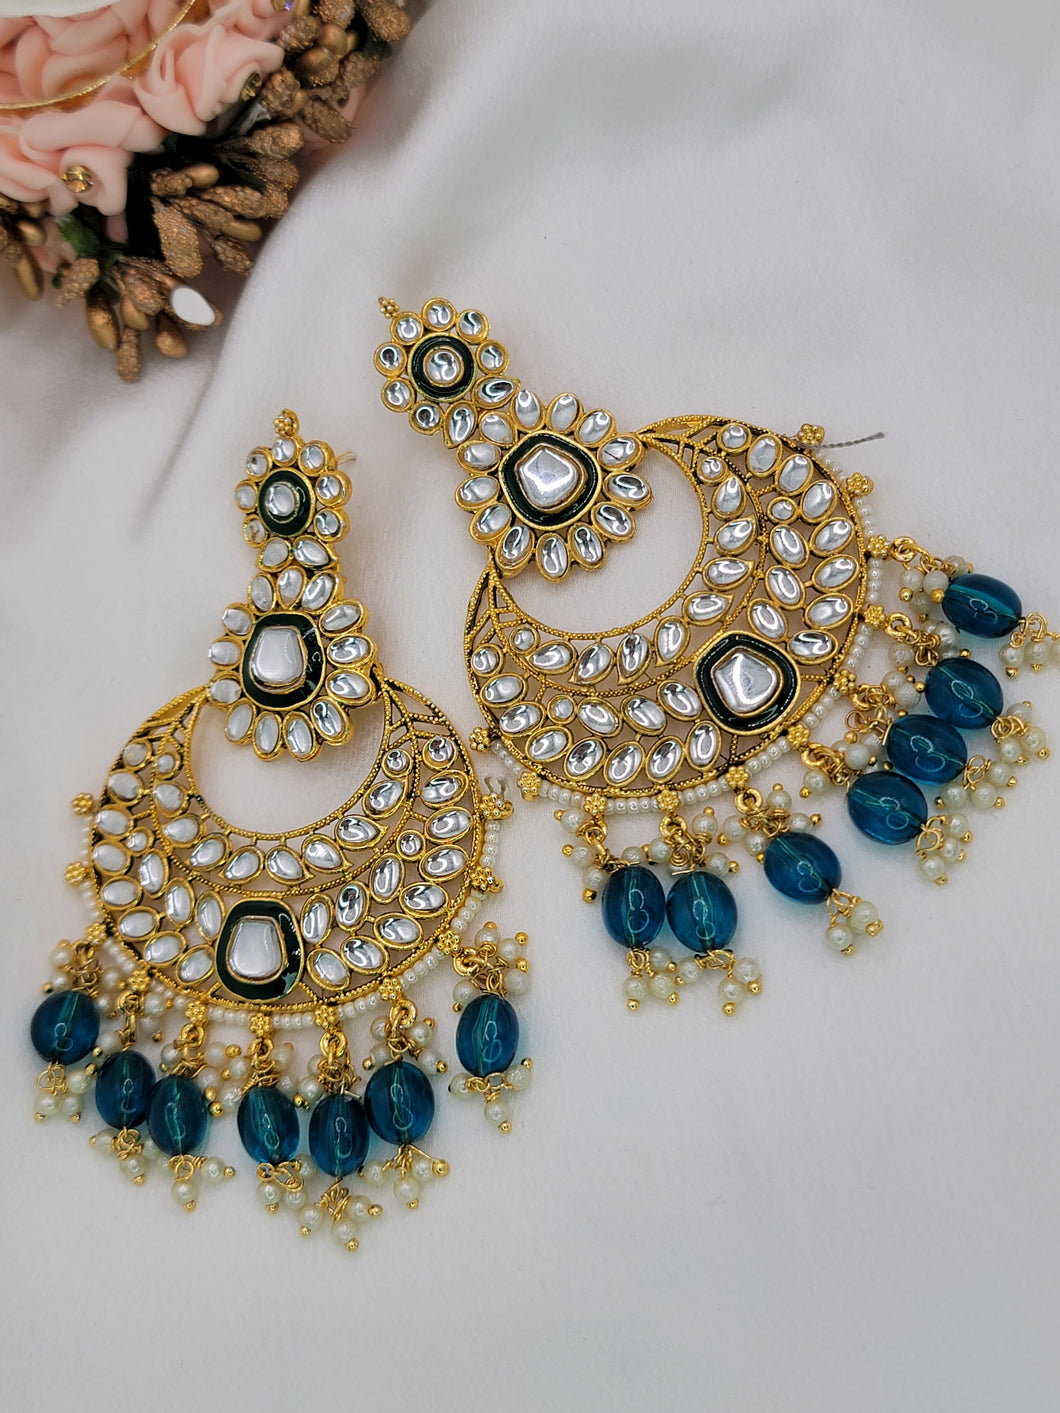 Ana earrings - Teal blue